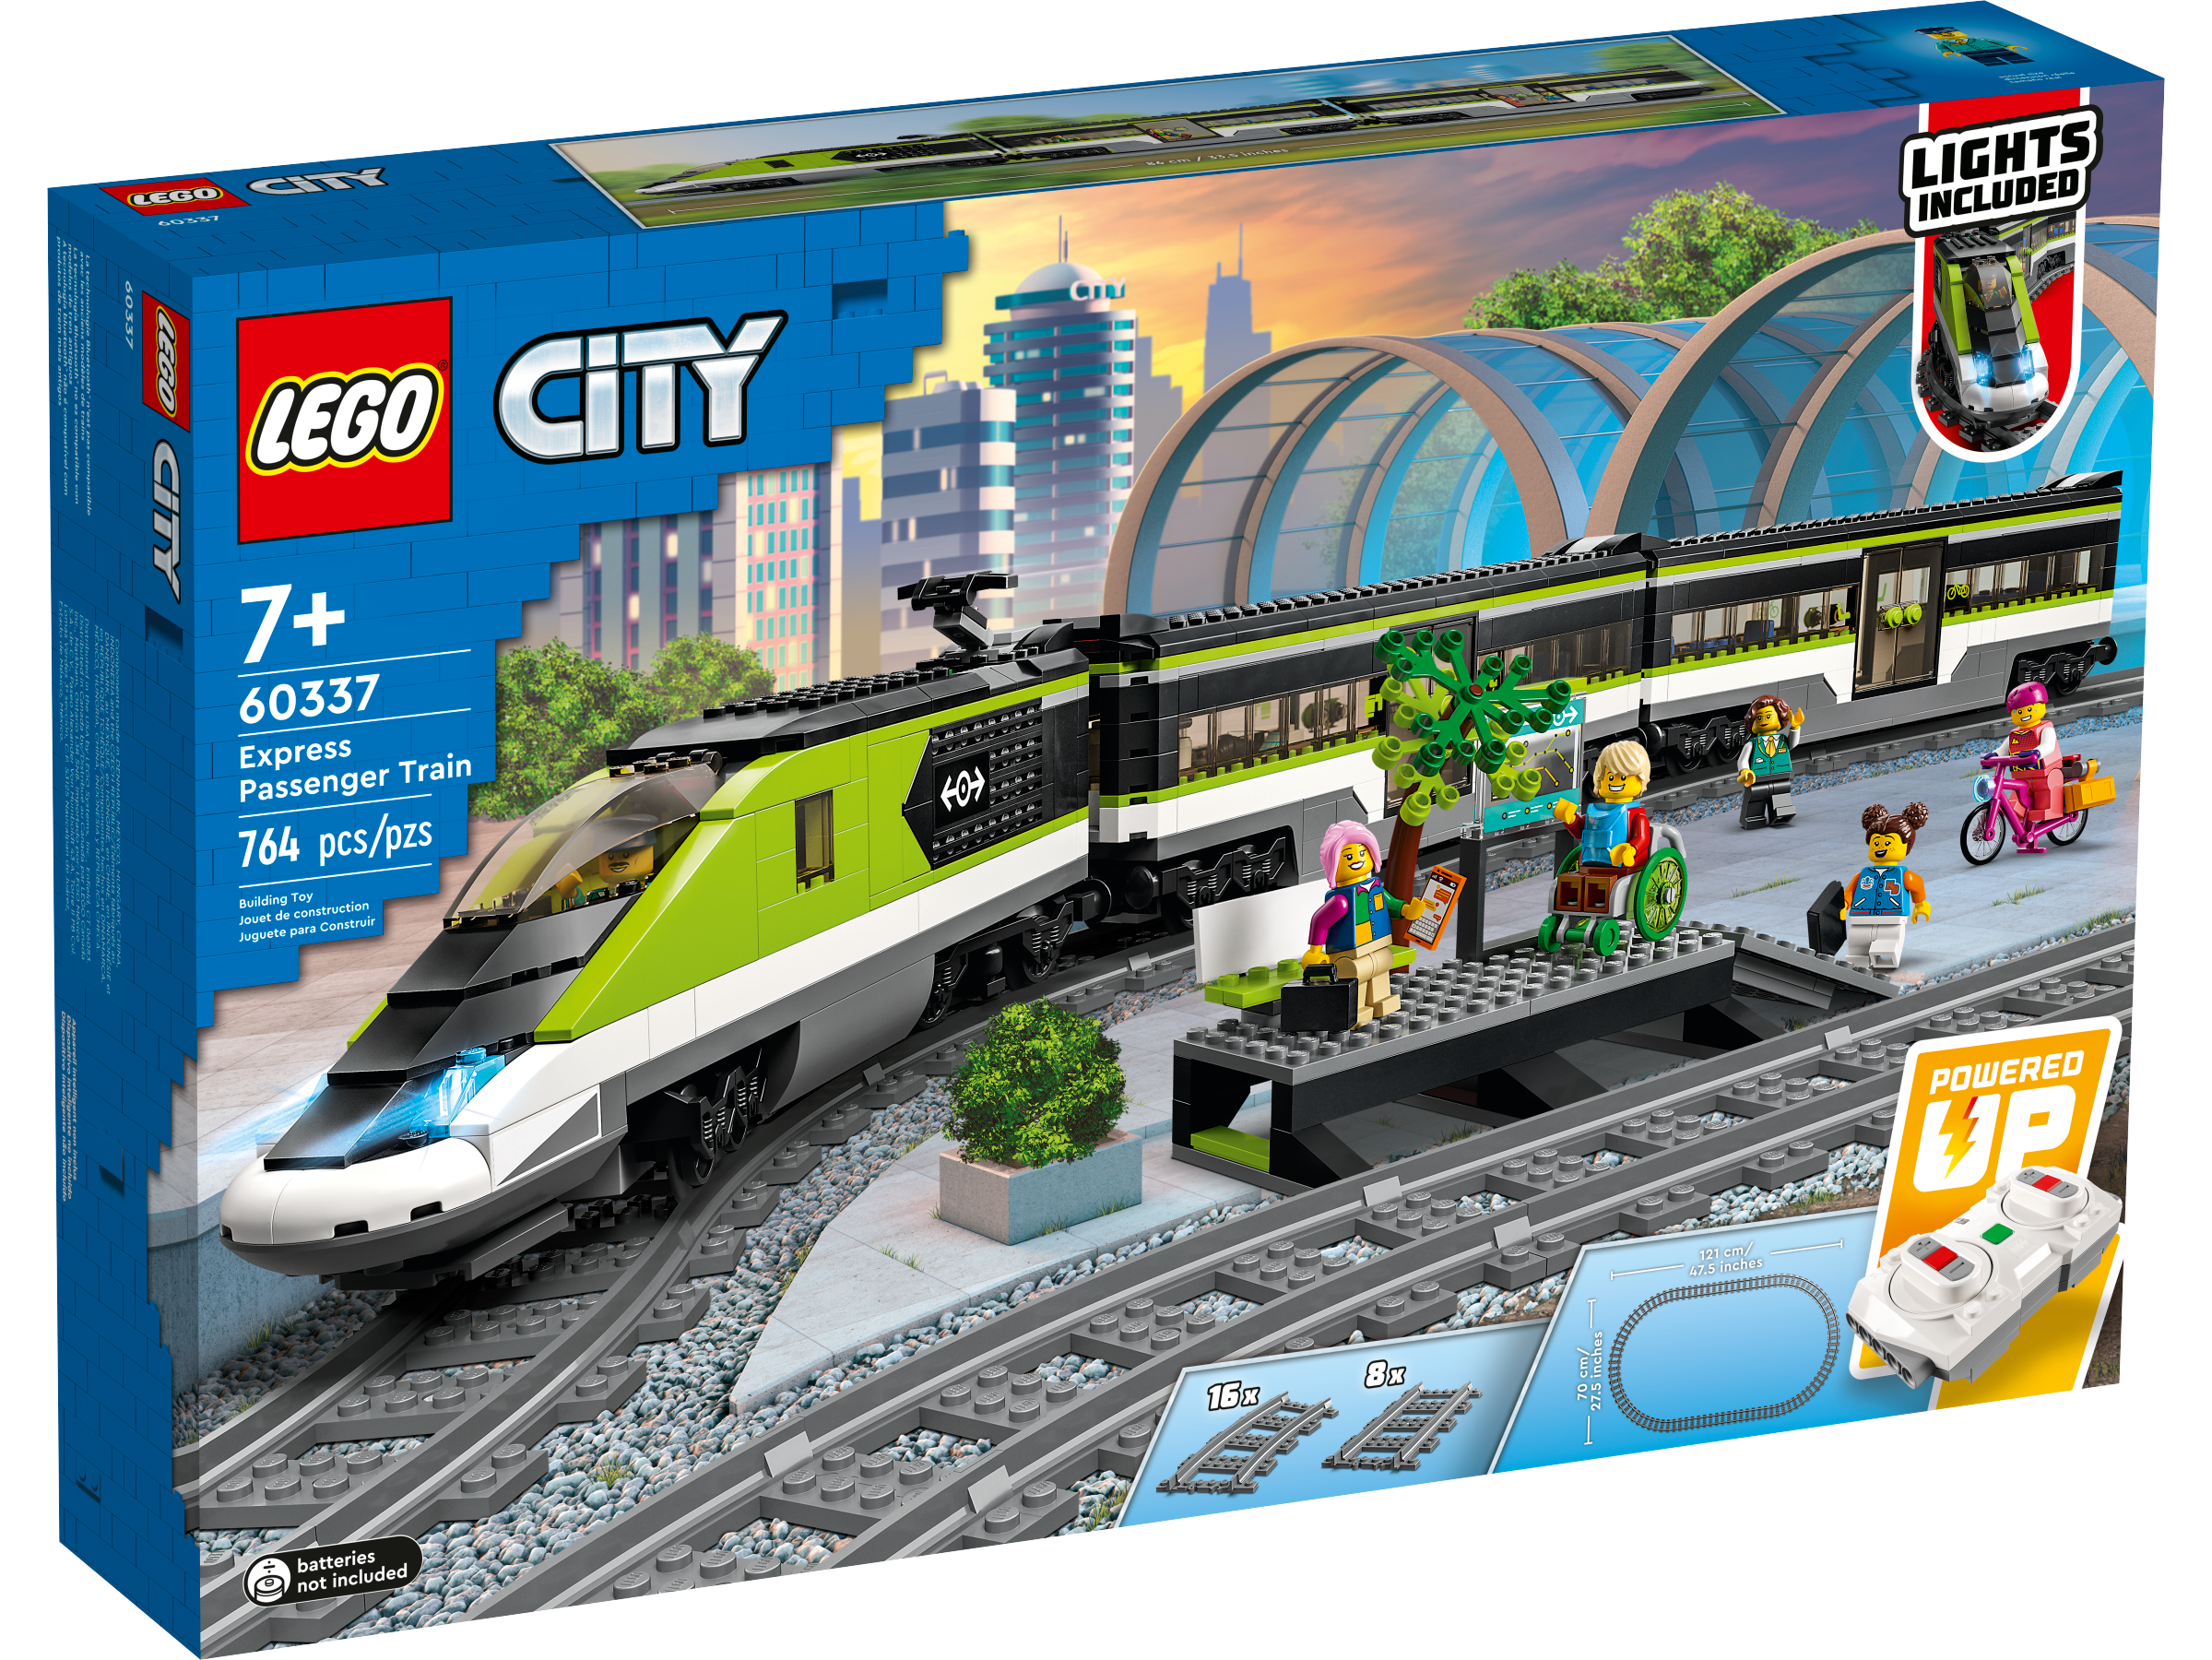 LEGO City Personen-Schnellzug (60337) - im GOLDSTIEN.SHOP verfügbar mit Gratisversand ab Schweizer Lager! (5702017162126)